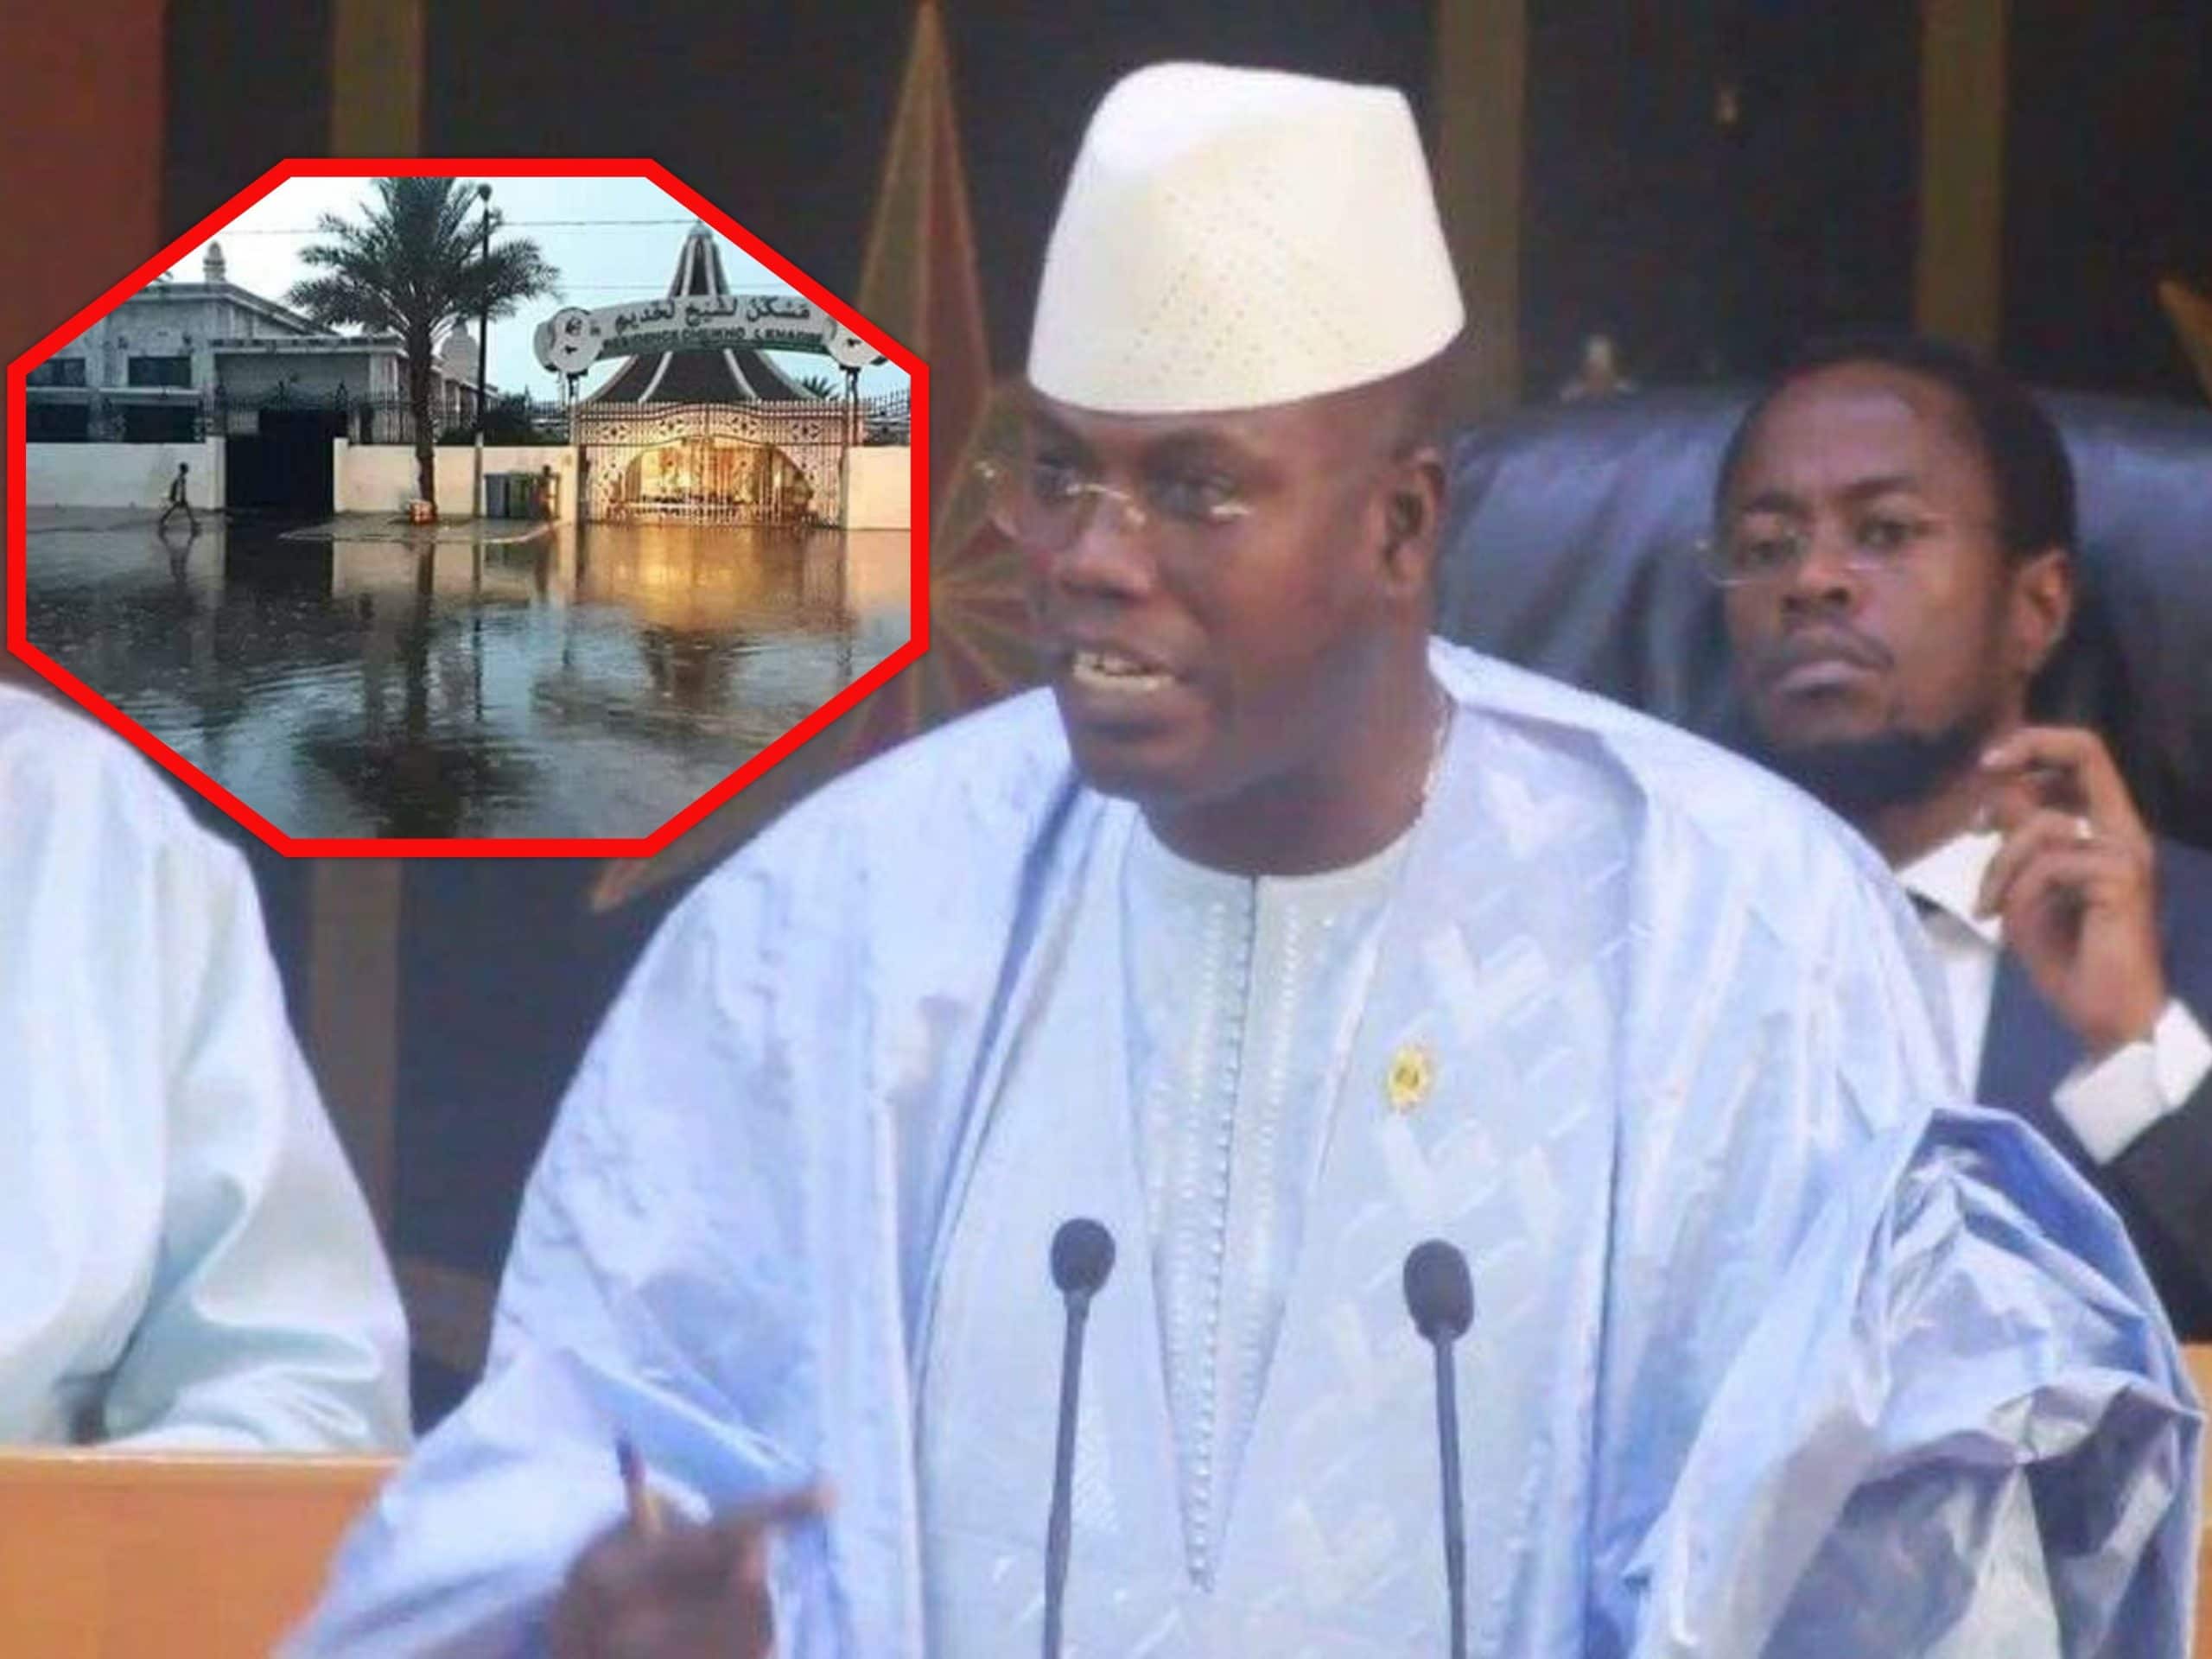 Assainissement à Touba : Cheikh A B Dolly accuse les autorités de l'Etat de détournement de fonds